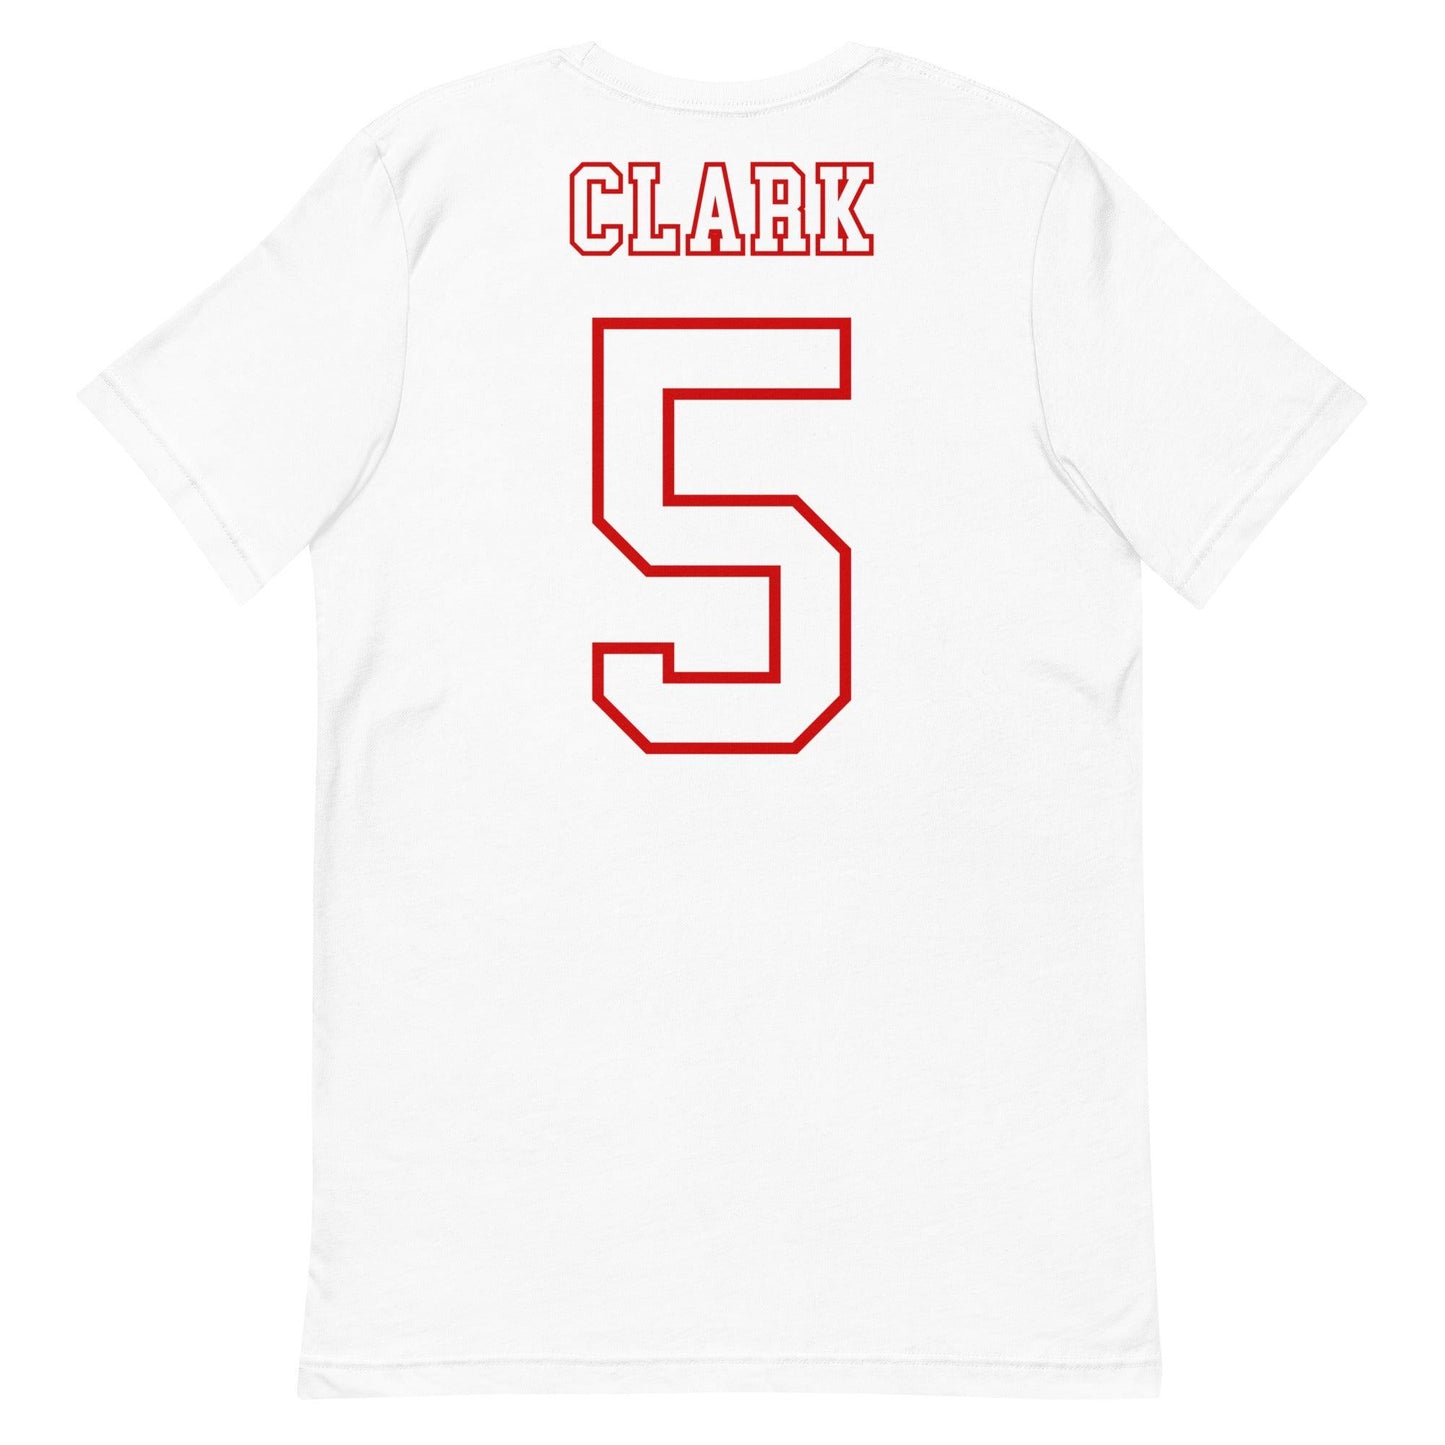 Jack Clark "Jersey" t-shirt - Fan Arch